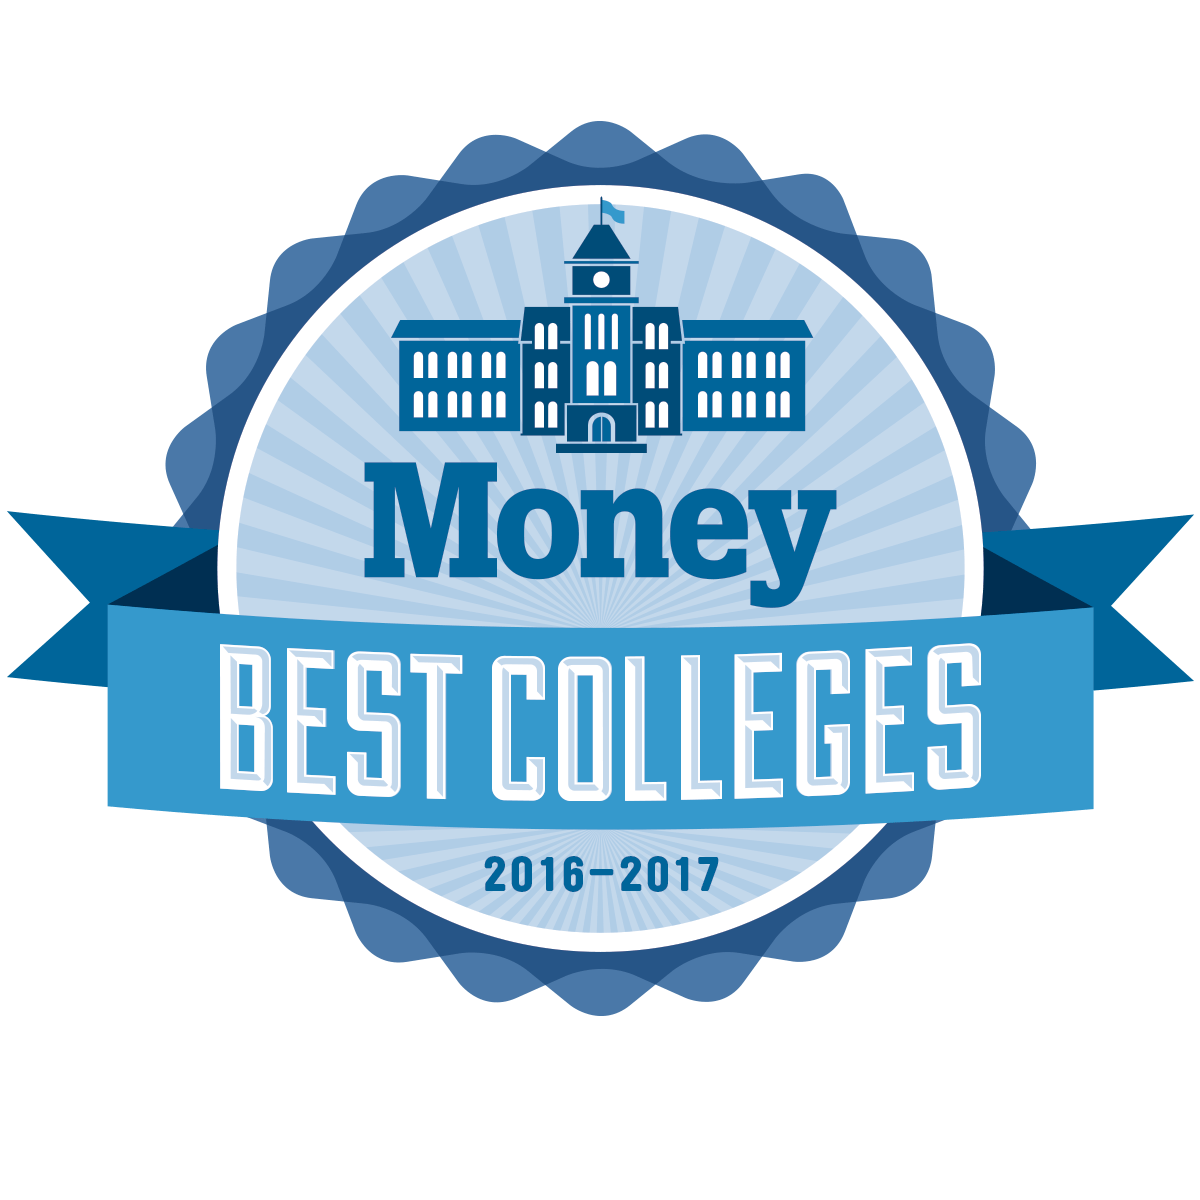 Money_Best Colleges logo 2016-2017